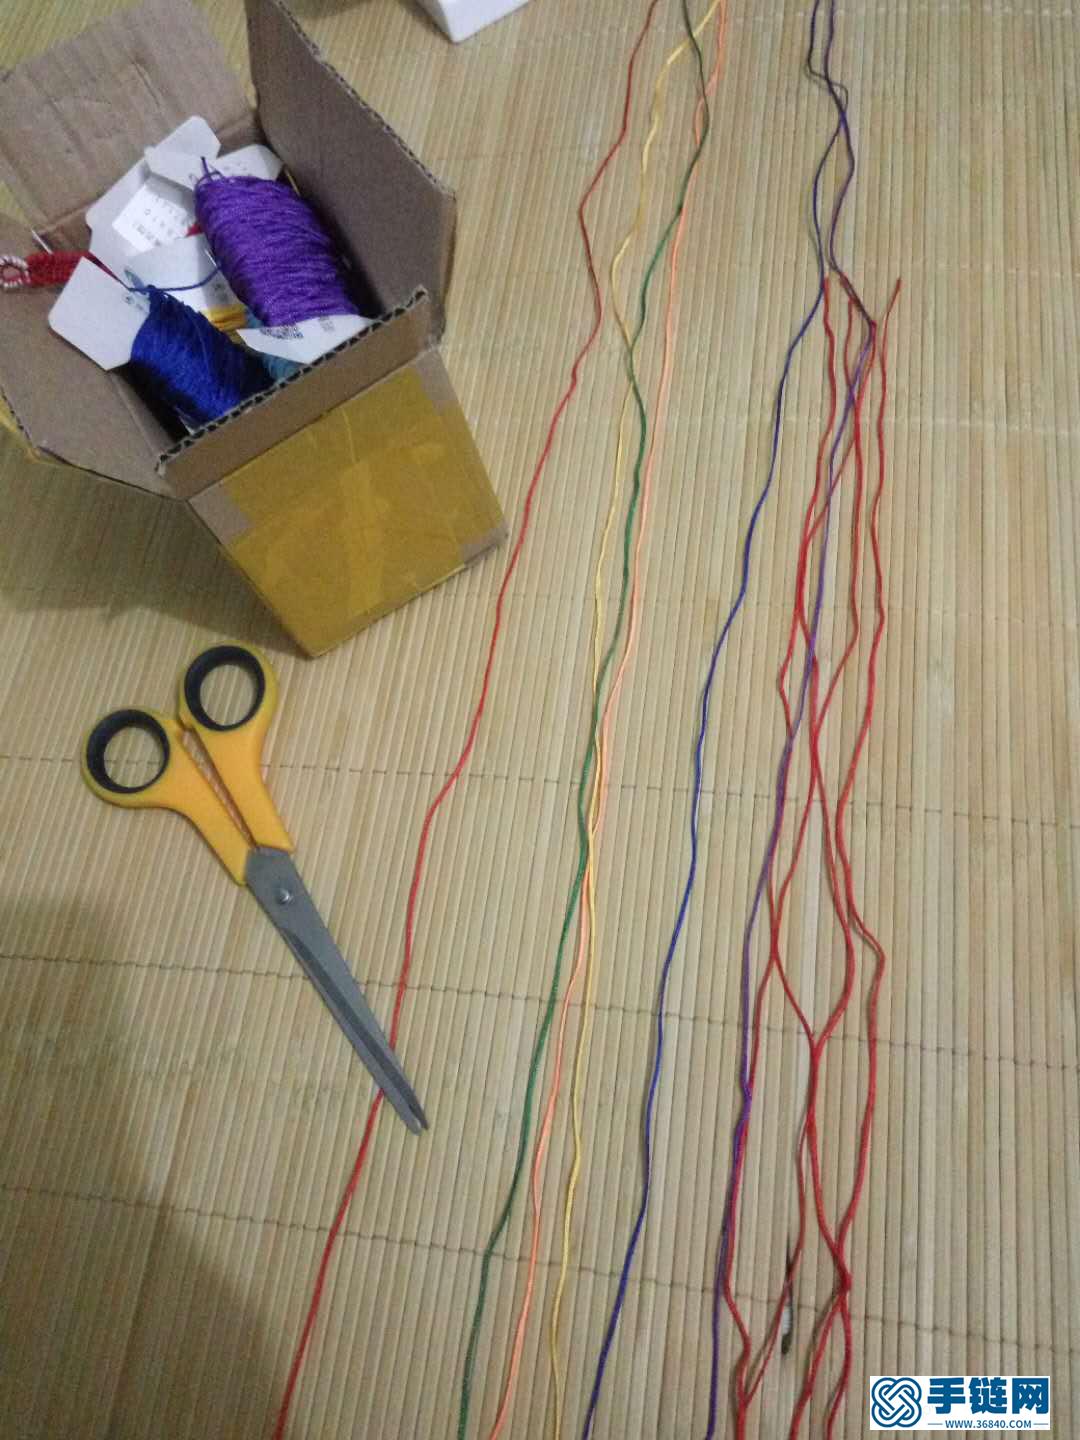 彩虹手链编织教程,详细的制作方法图解